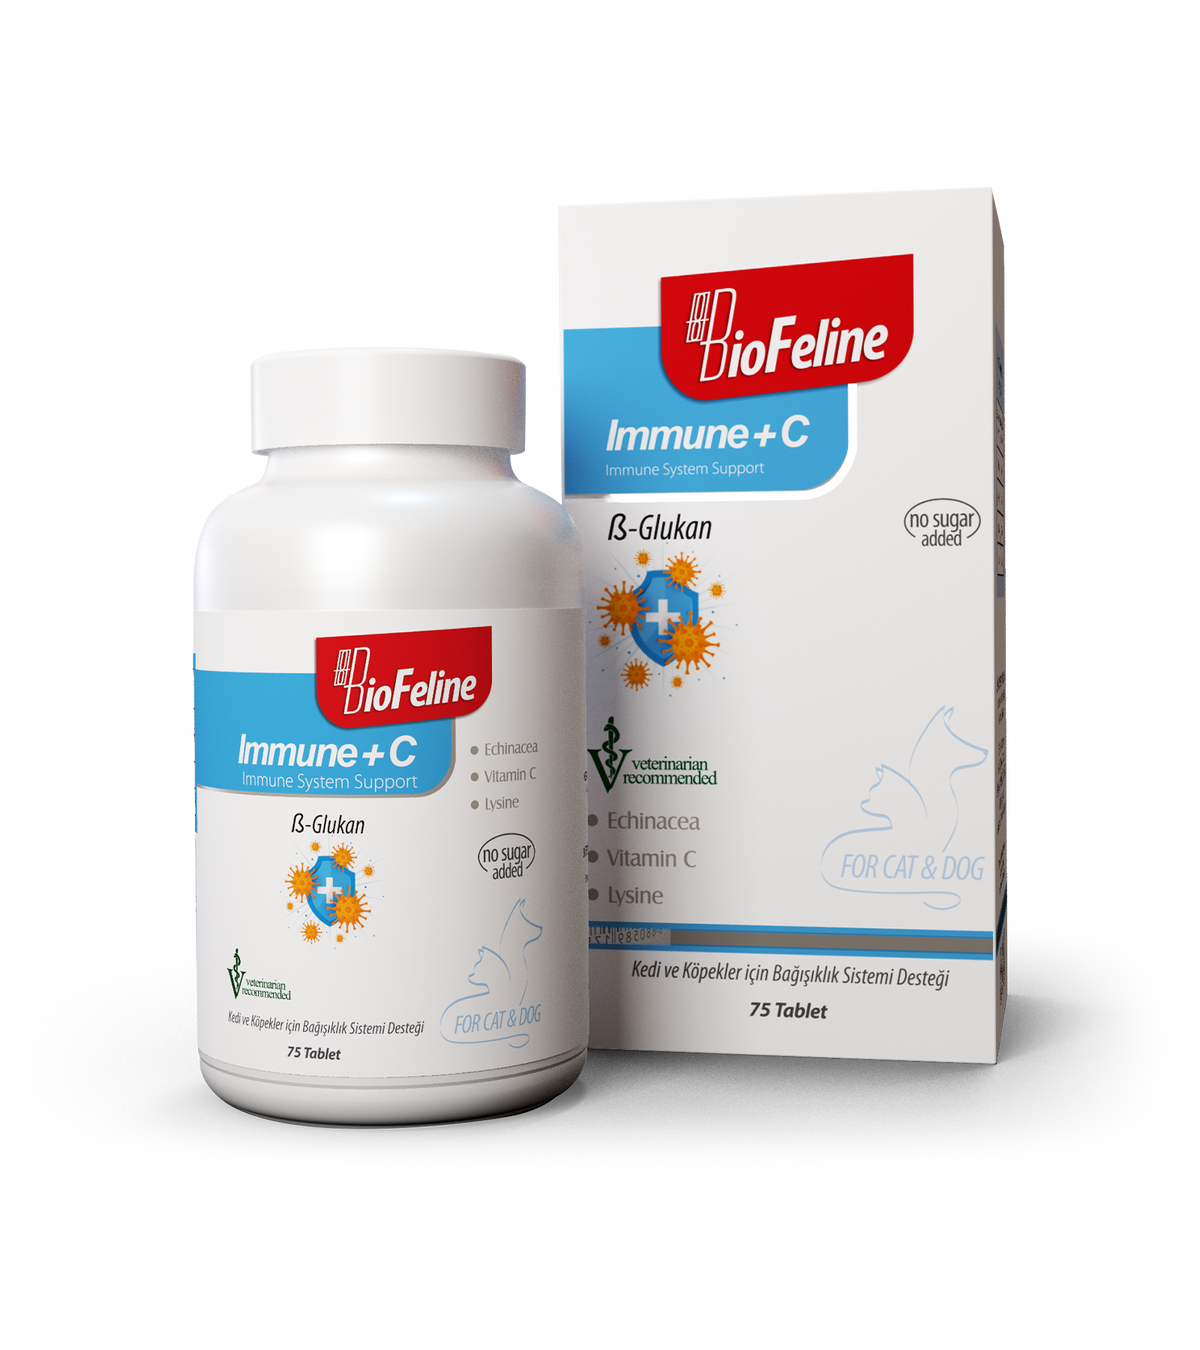 BioFeline Immune+C 75 Tablet (Kedi Ve Köpekler İçin Bağışıklık Sistemini Güçlendiren Bağışıklık Sistemi Destek Tableti)